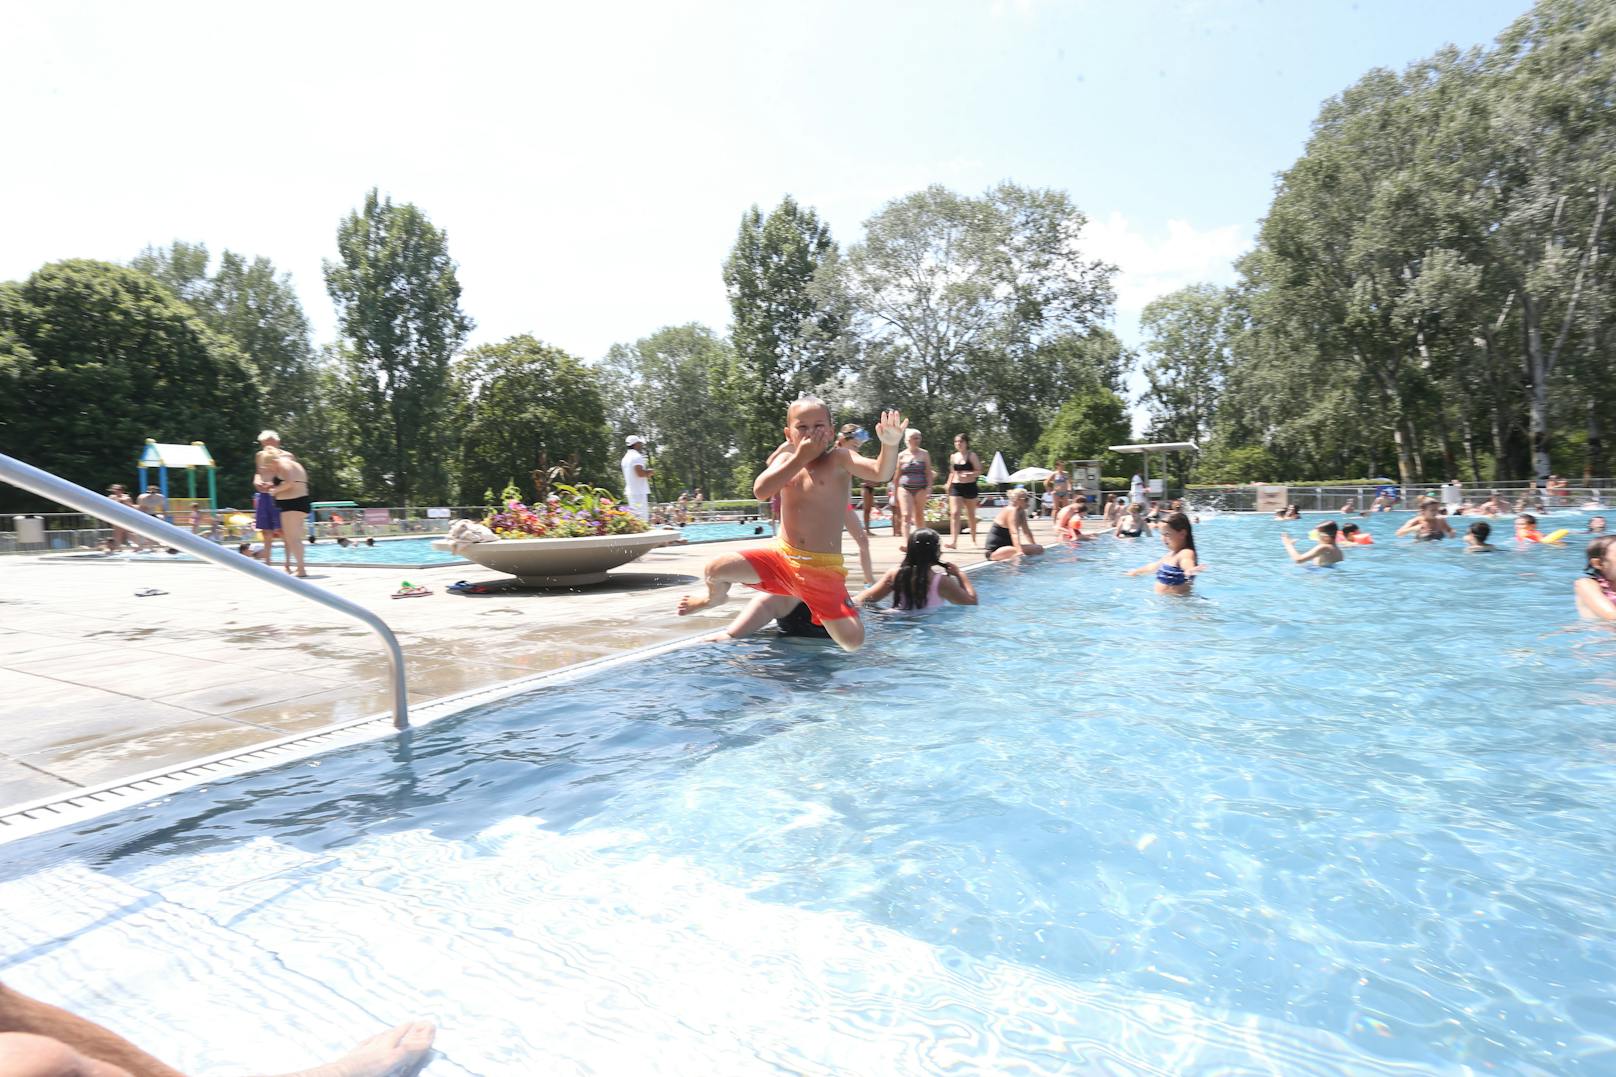 Plantschen mit Abstand war in der heurigen Corona-Freibadsaison das Motto in Wiens Bädern. Trotz der strengen Regeln ließen sich knapp 1,2 Millionen Wasserratten den Badespaß nicht verderben.